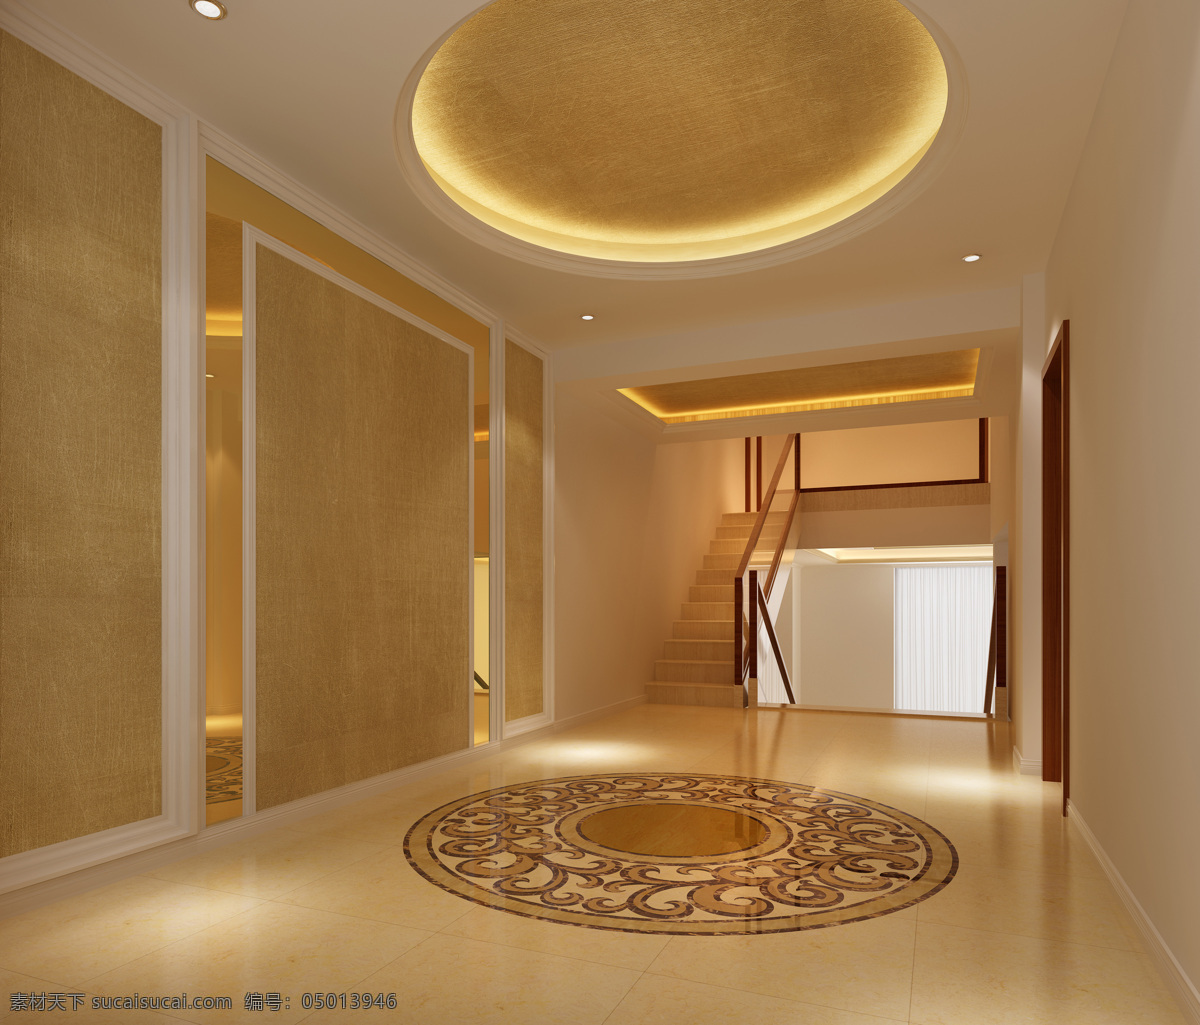 吊灯 房屋 环境设计 楼梯 门厅 室内设计 走廊 二楼 设计素材 模板下载 花纹地毯 装饰素材